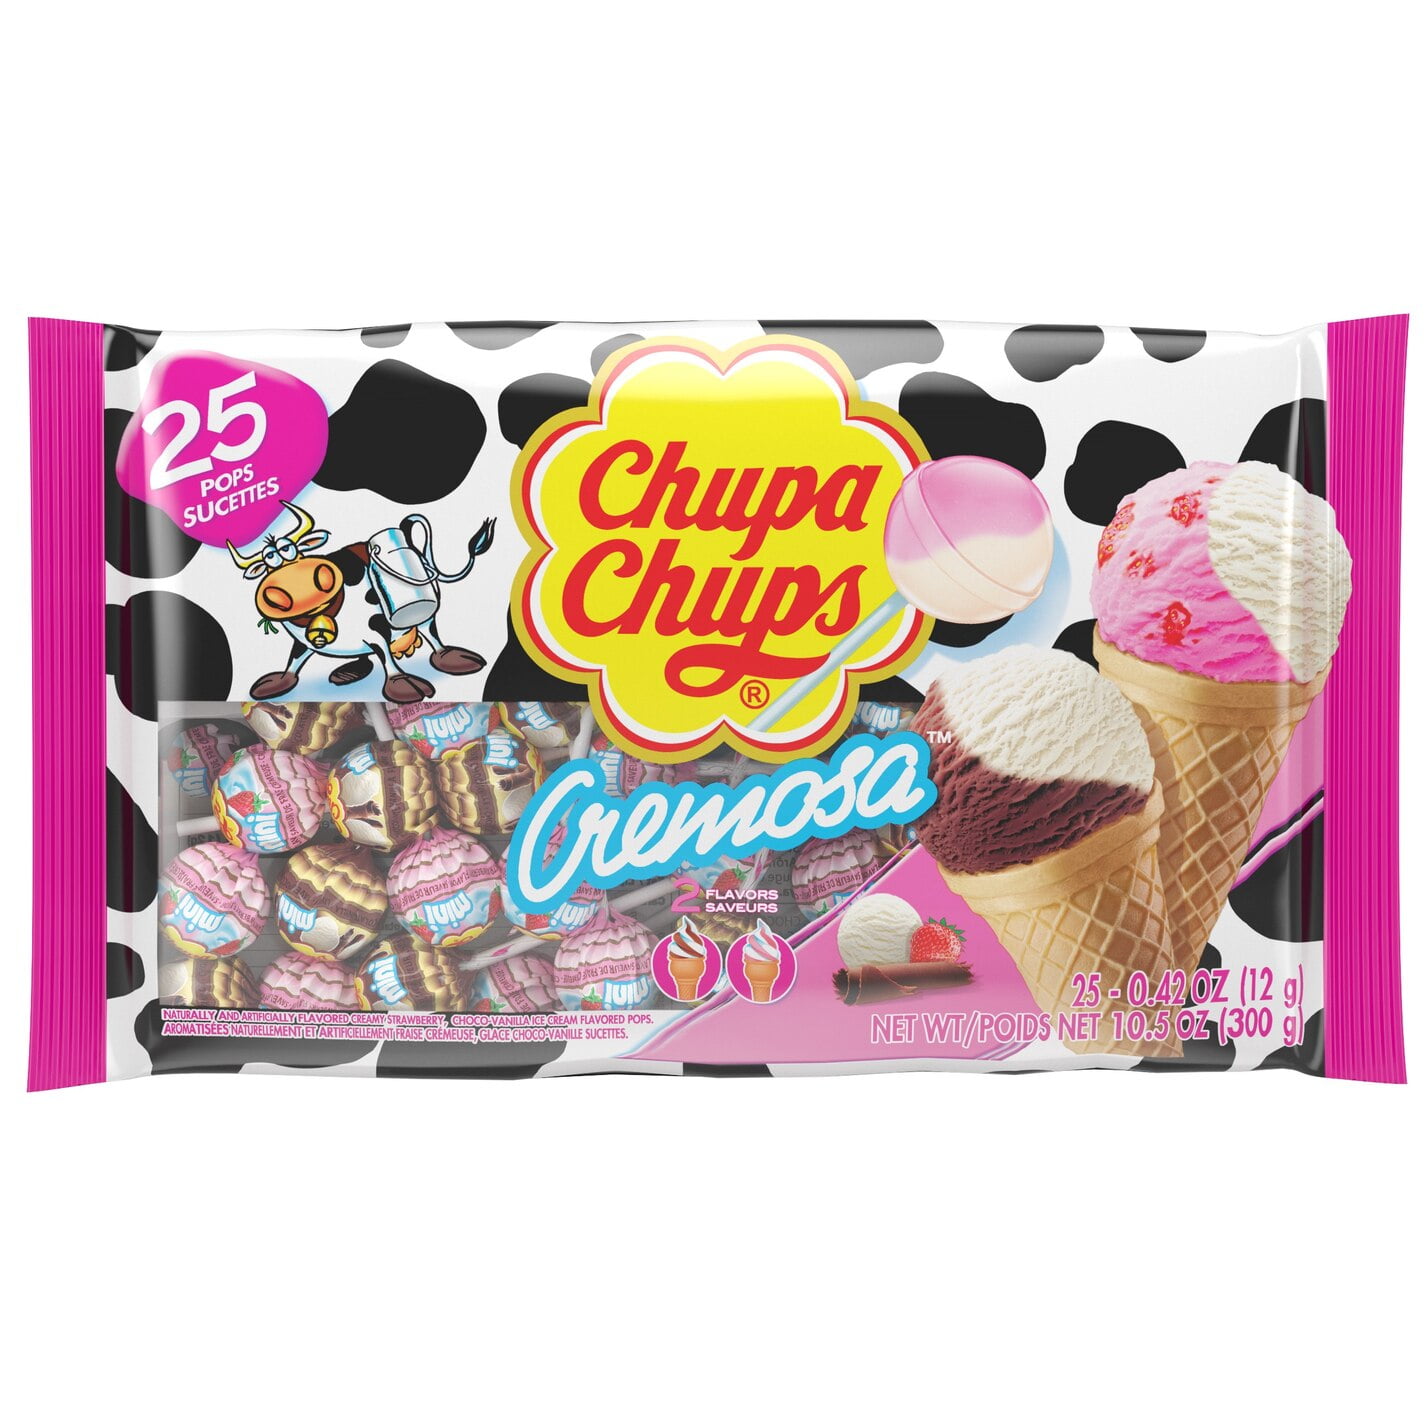 Chupa Chups All Flavors